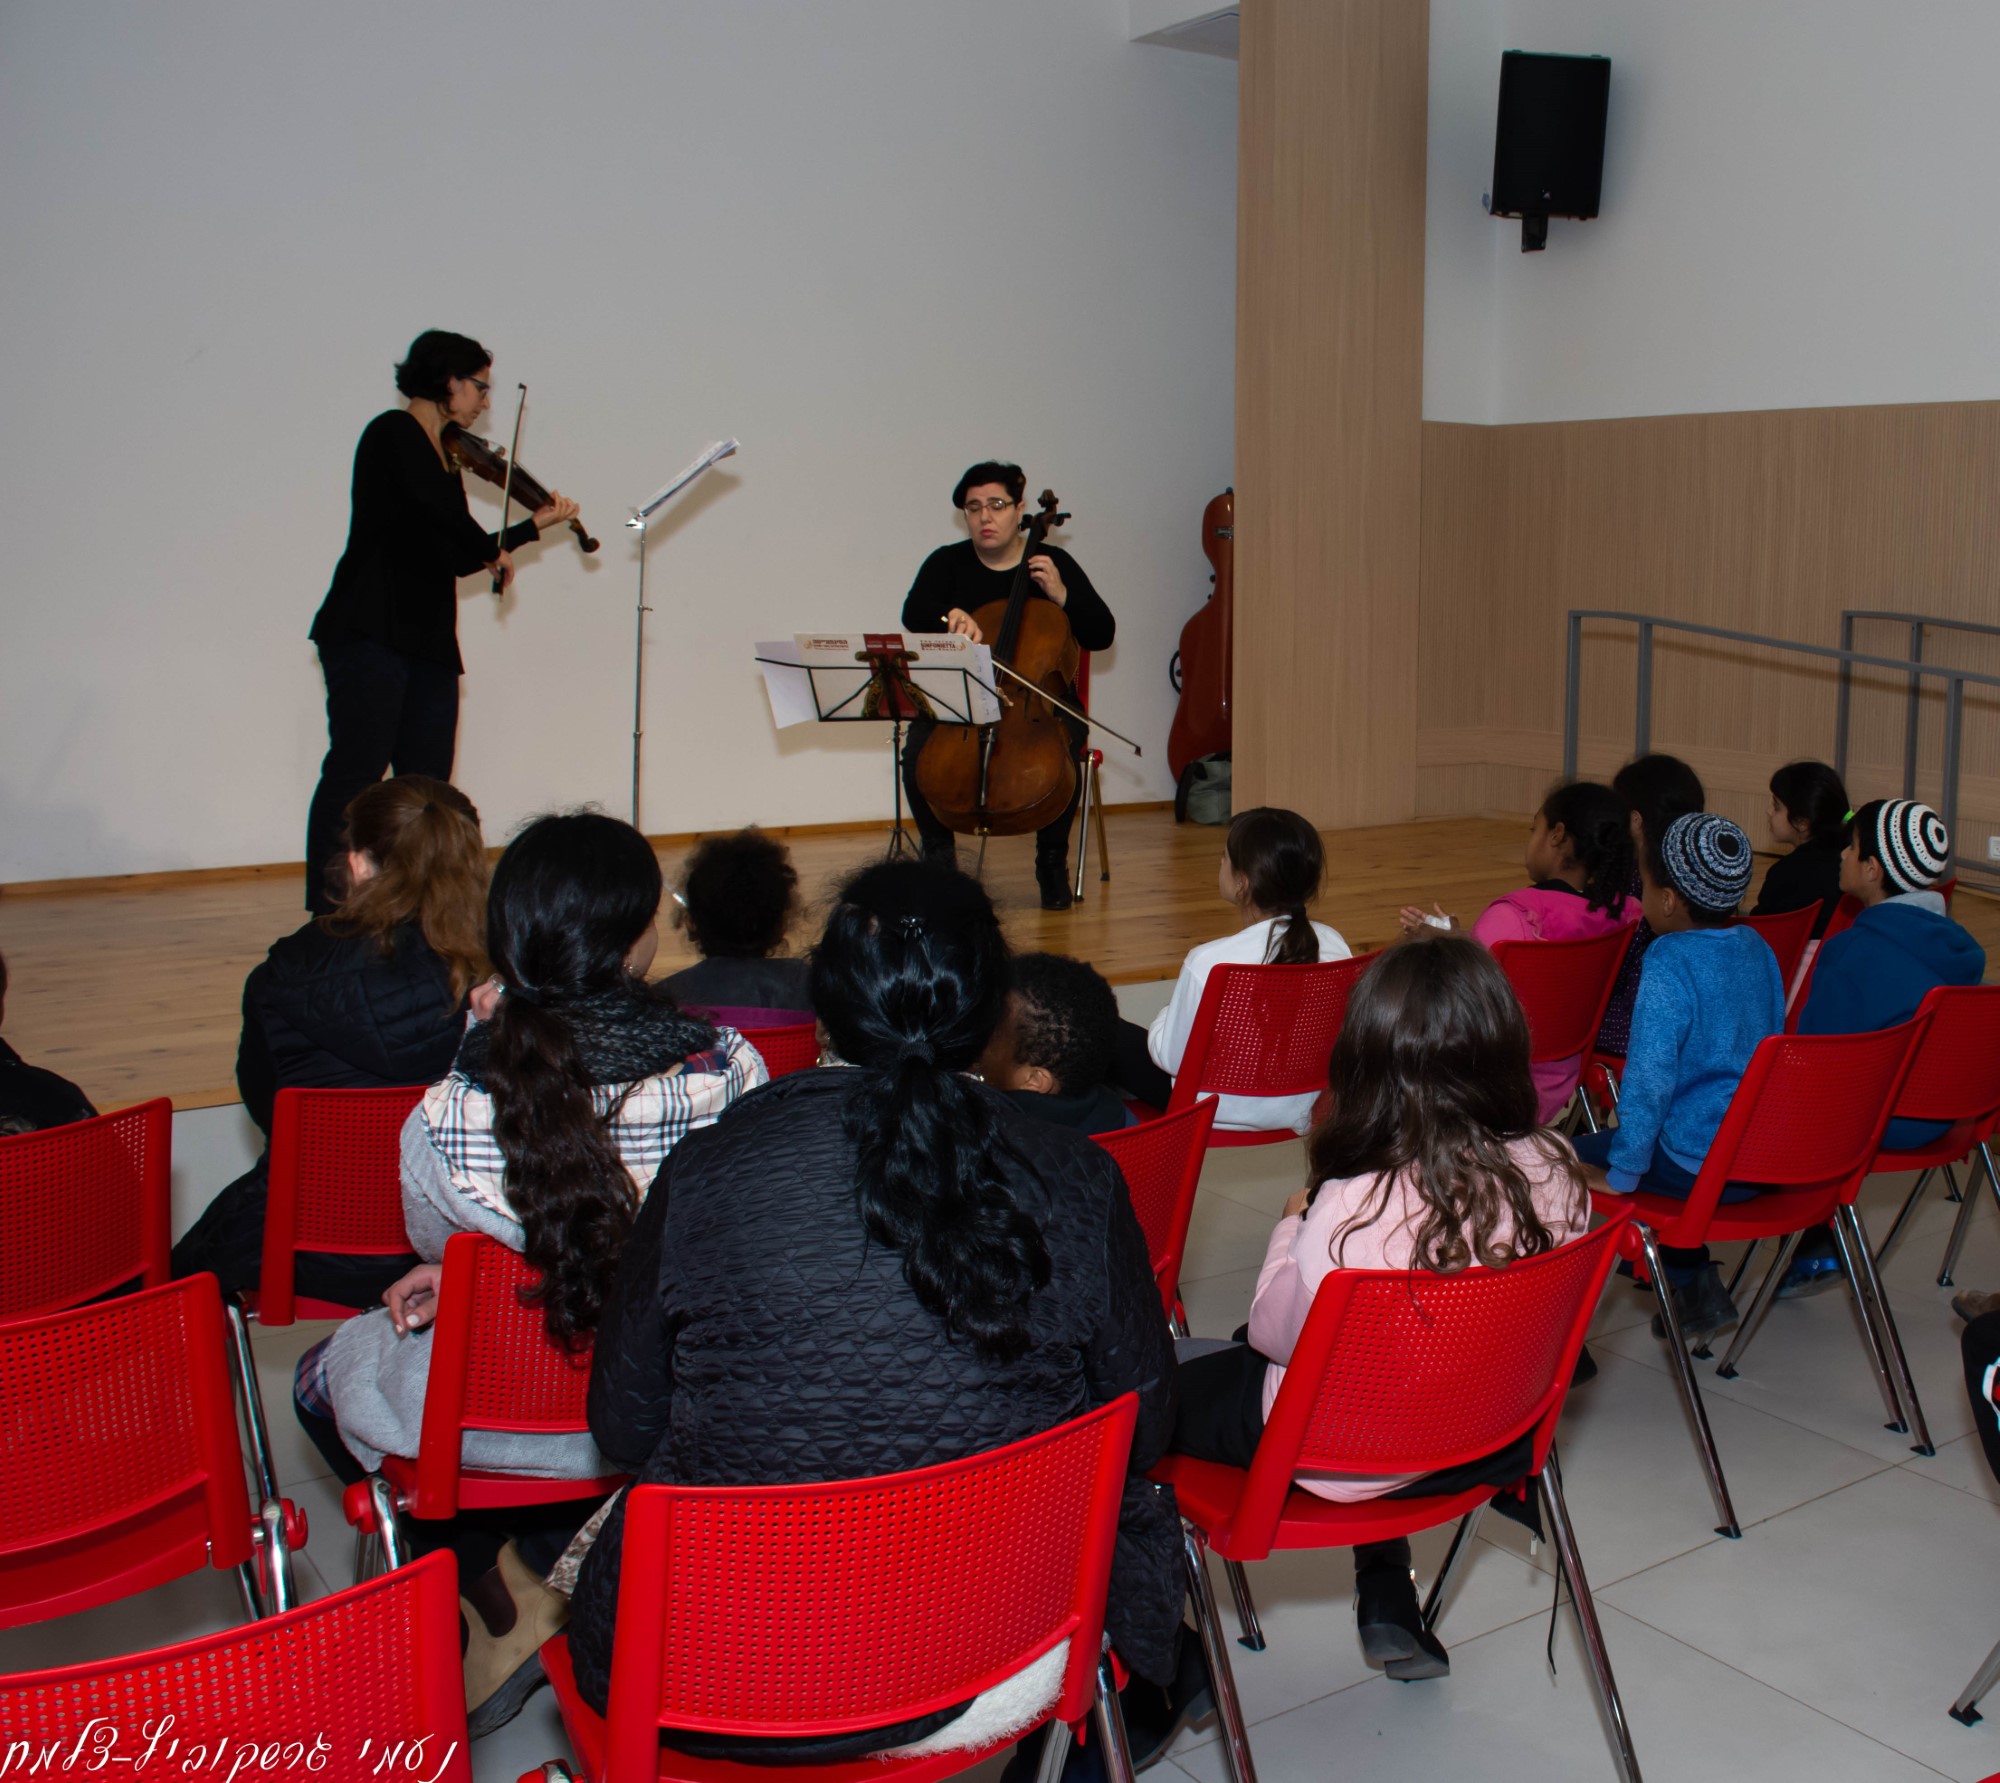 חוויה מוסיקלית: הנגשת המוסיקה הקלאסית לילדים ונוער בסיכון